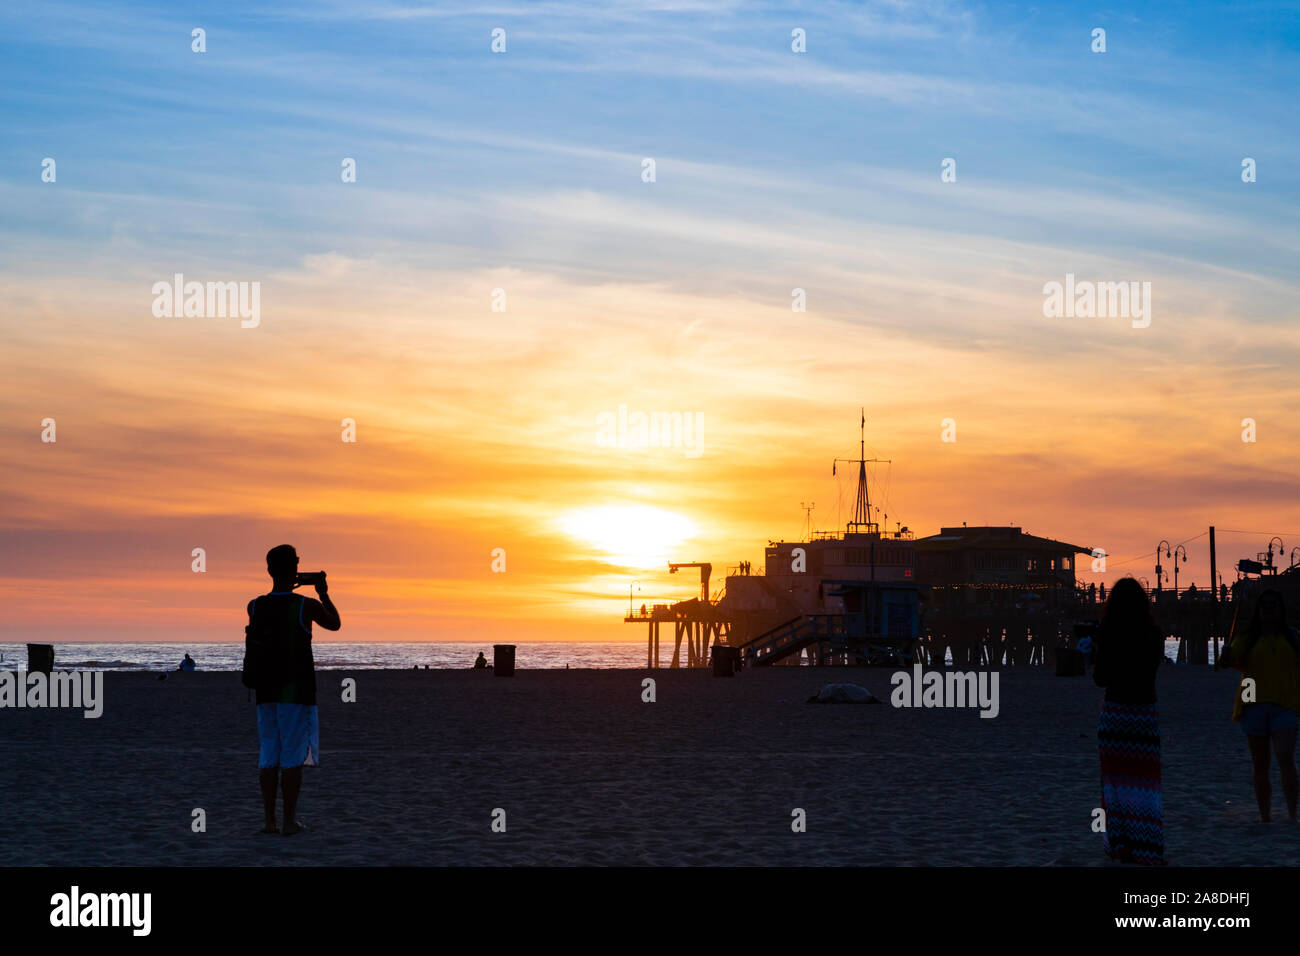 Die Leute am Strand von Santa Monica warten, um den Sonnenuntergang zu fotografieren, Los Angeles County, Kalifornien, Vereinigte Staaten von Amerika Stockfoto